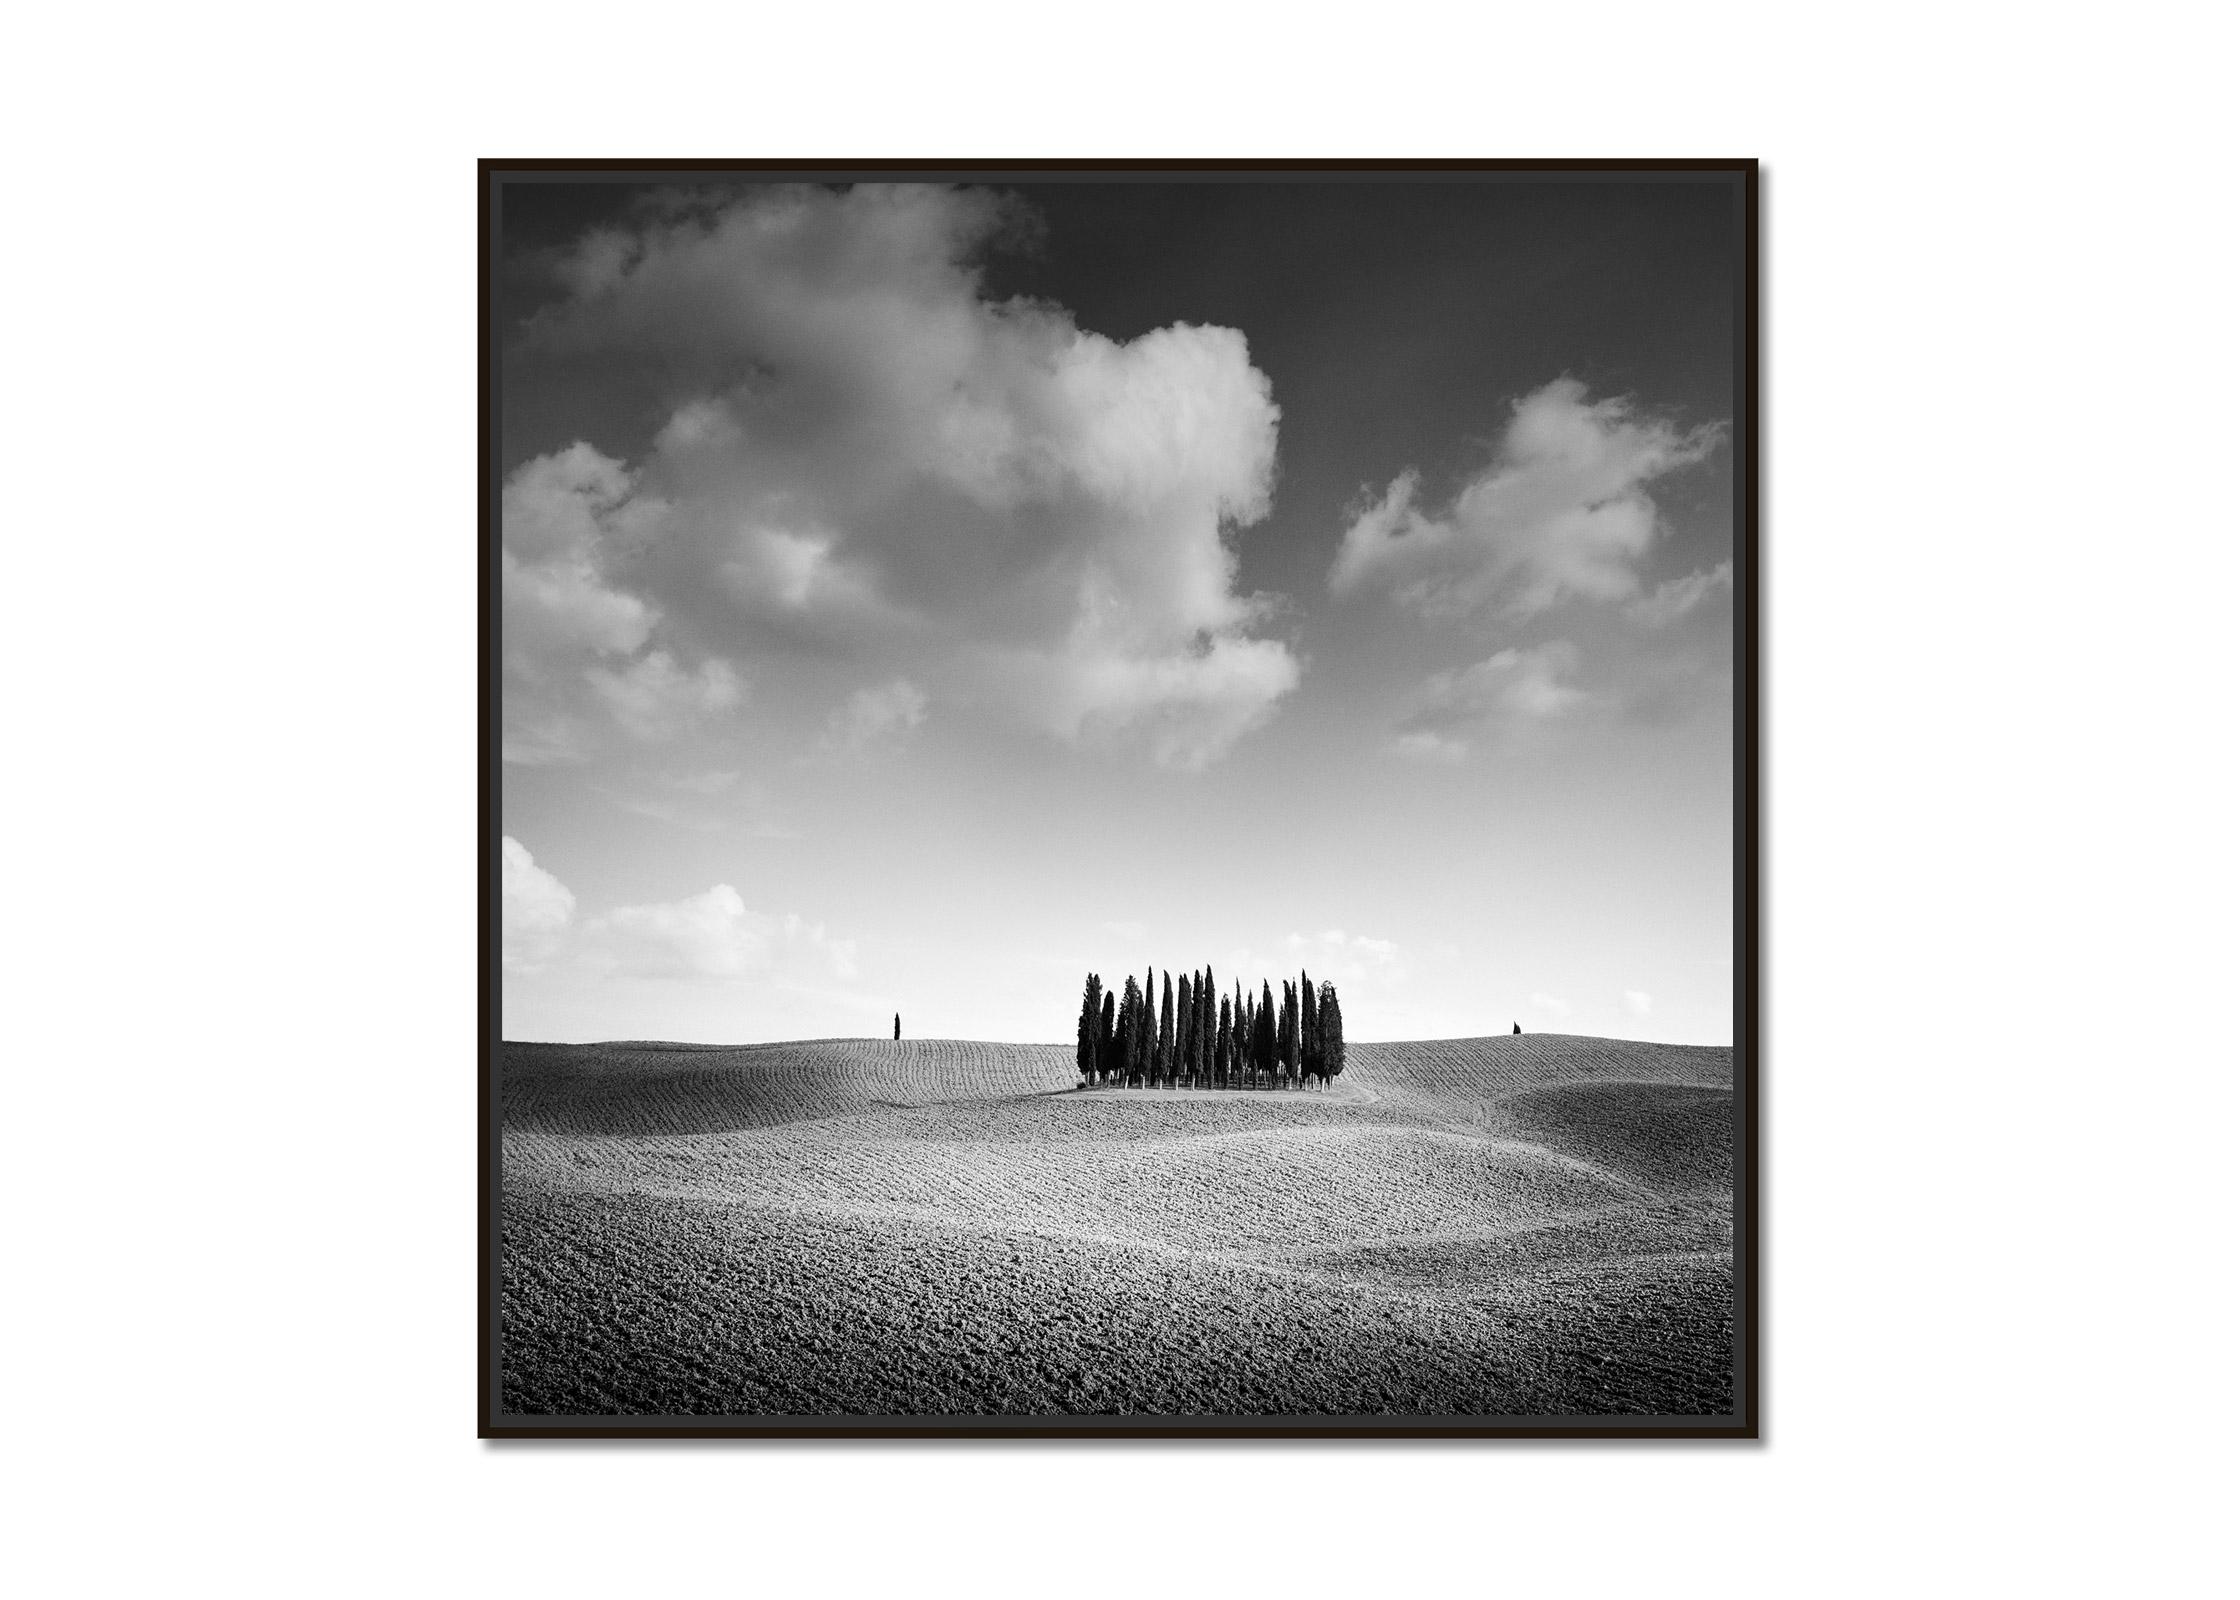   Cypress Hill, Toskana, Italien, minimalistische Schwarz-Weiß-Fotografie, Landschaft – Photograph von Gerald Berghammer